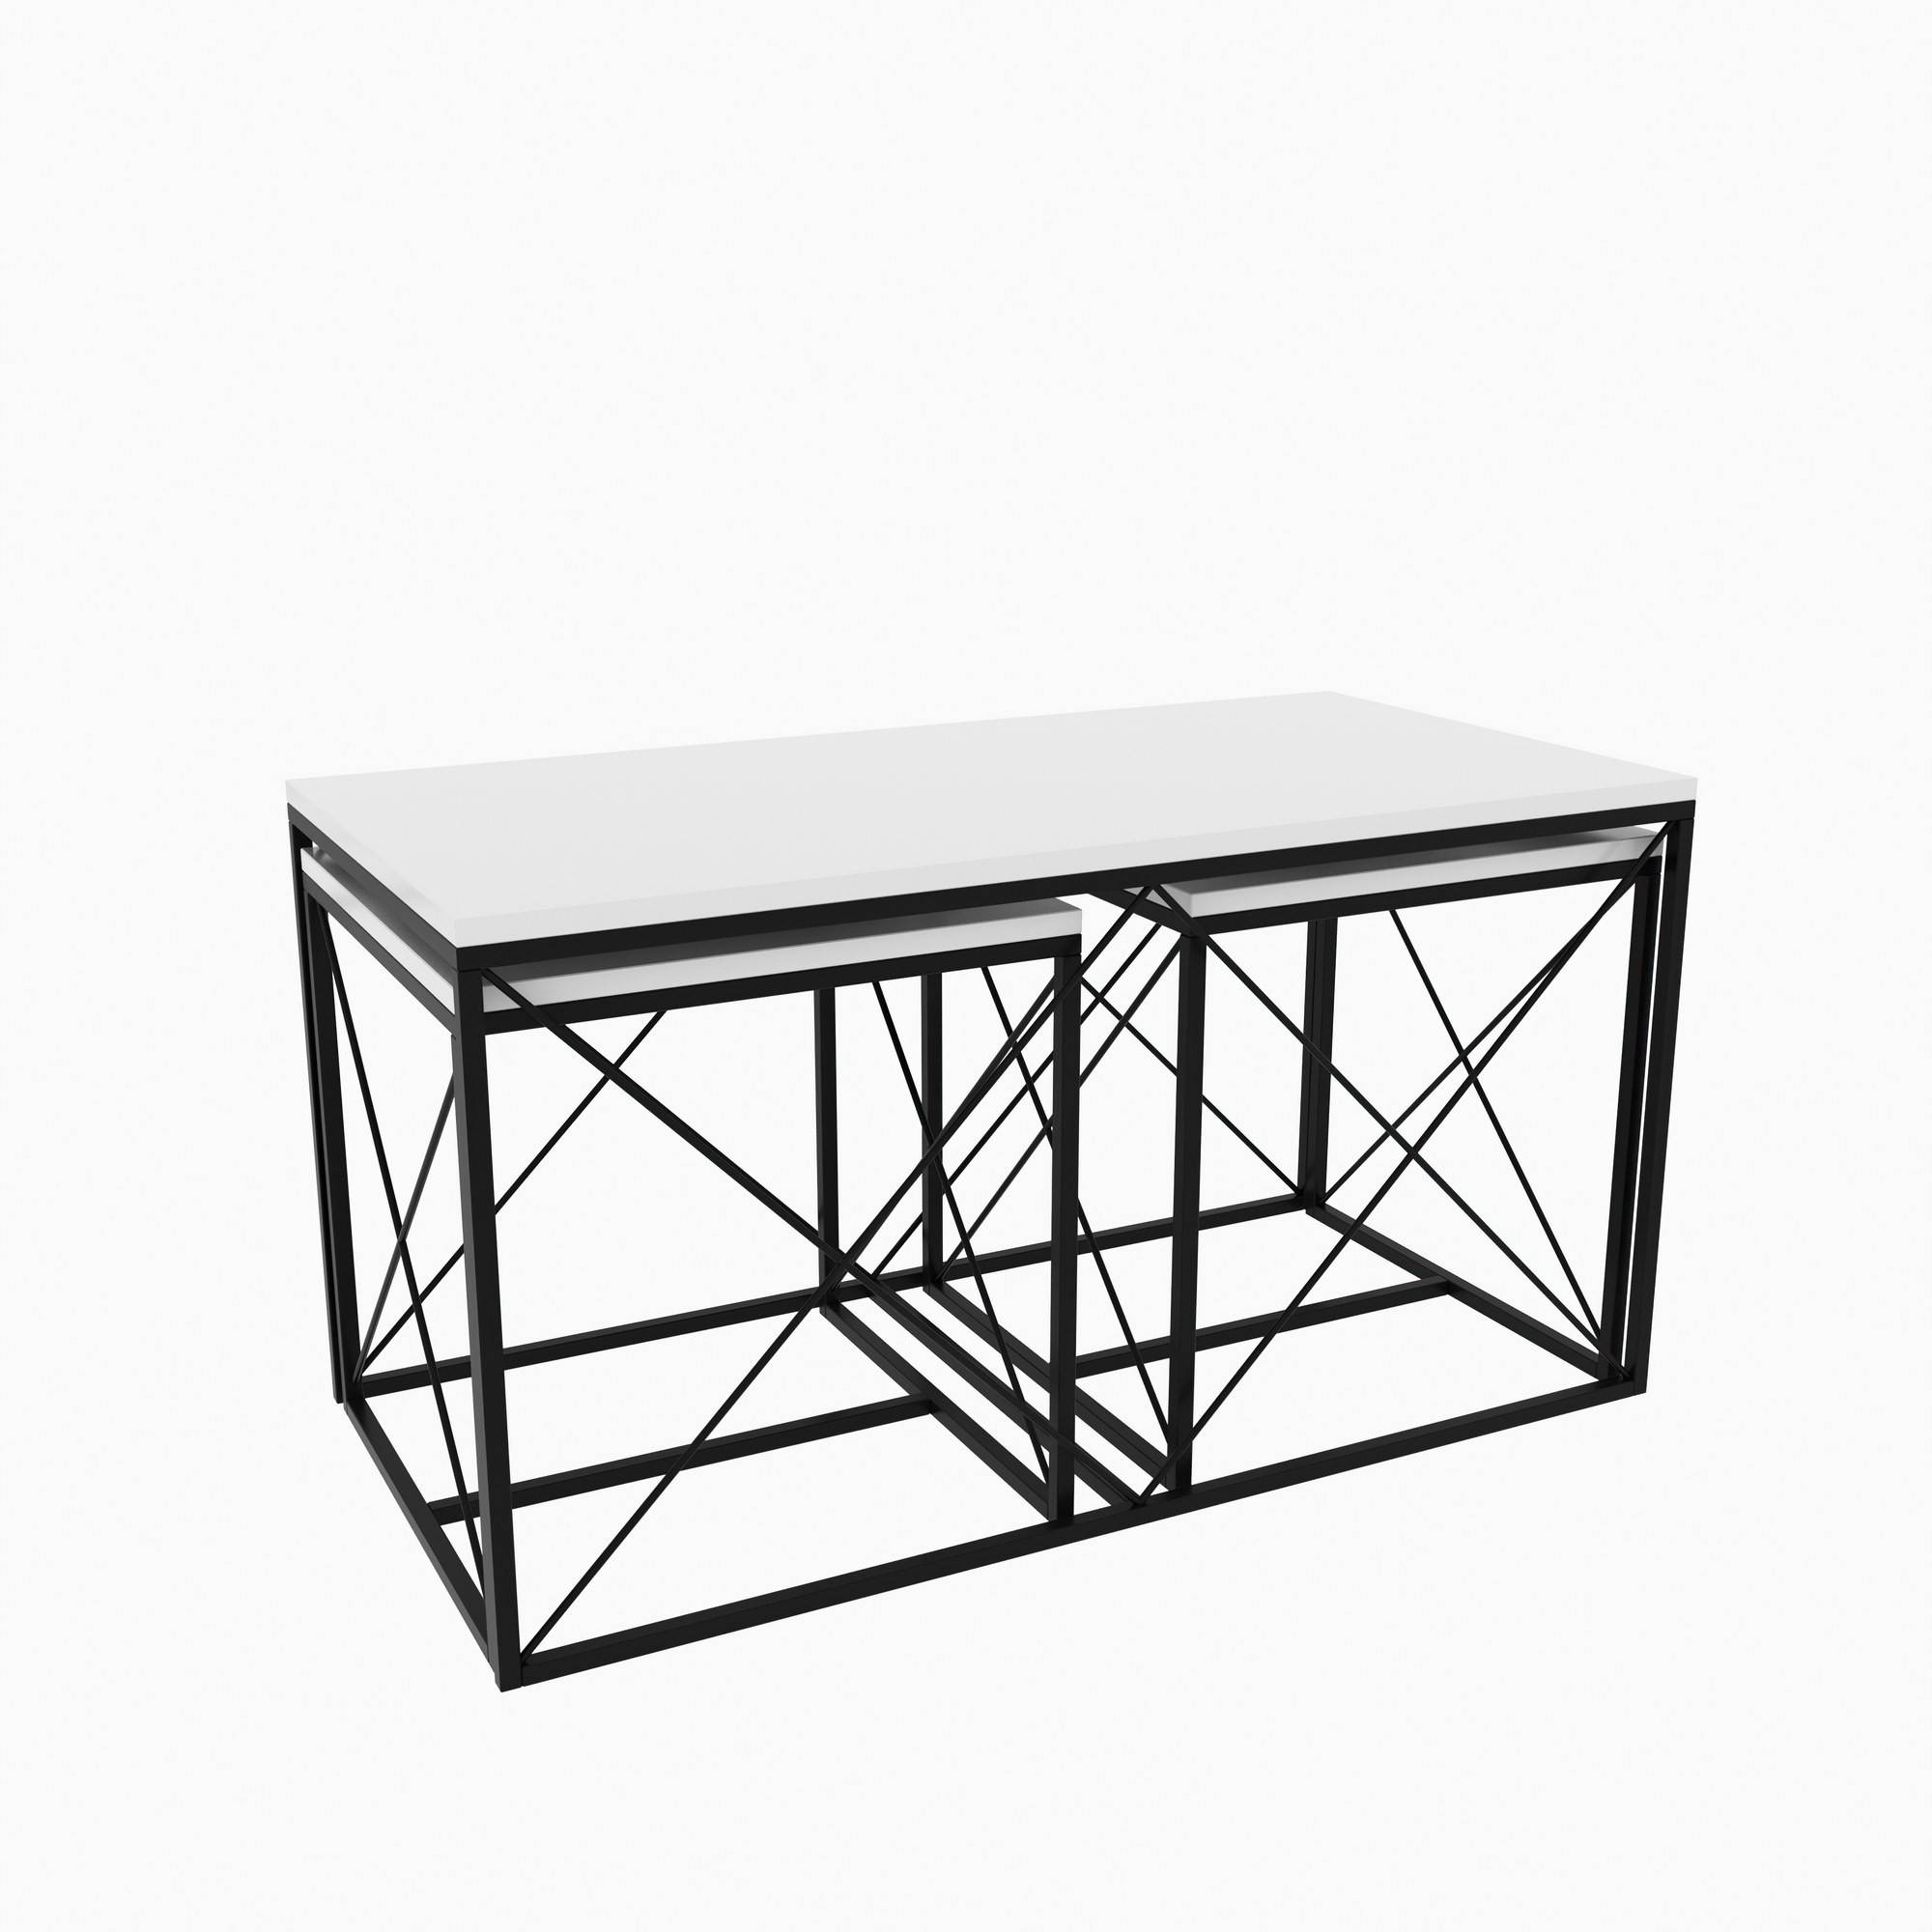 Juego de 3 mesas de centro nido Langkawa de estilo industrial en metal negro y madera blanca